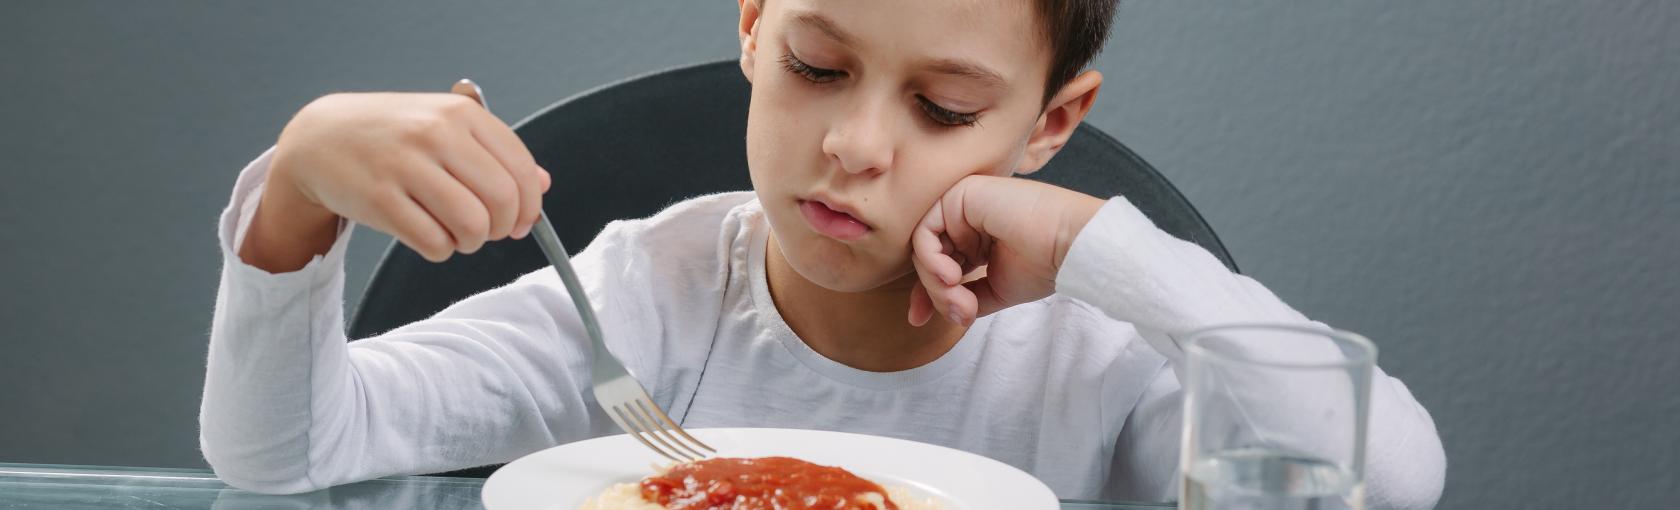 Surpoids : mon enfant mange trop de grandes quantités